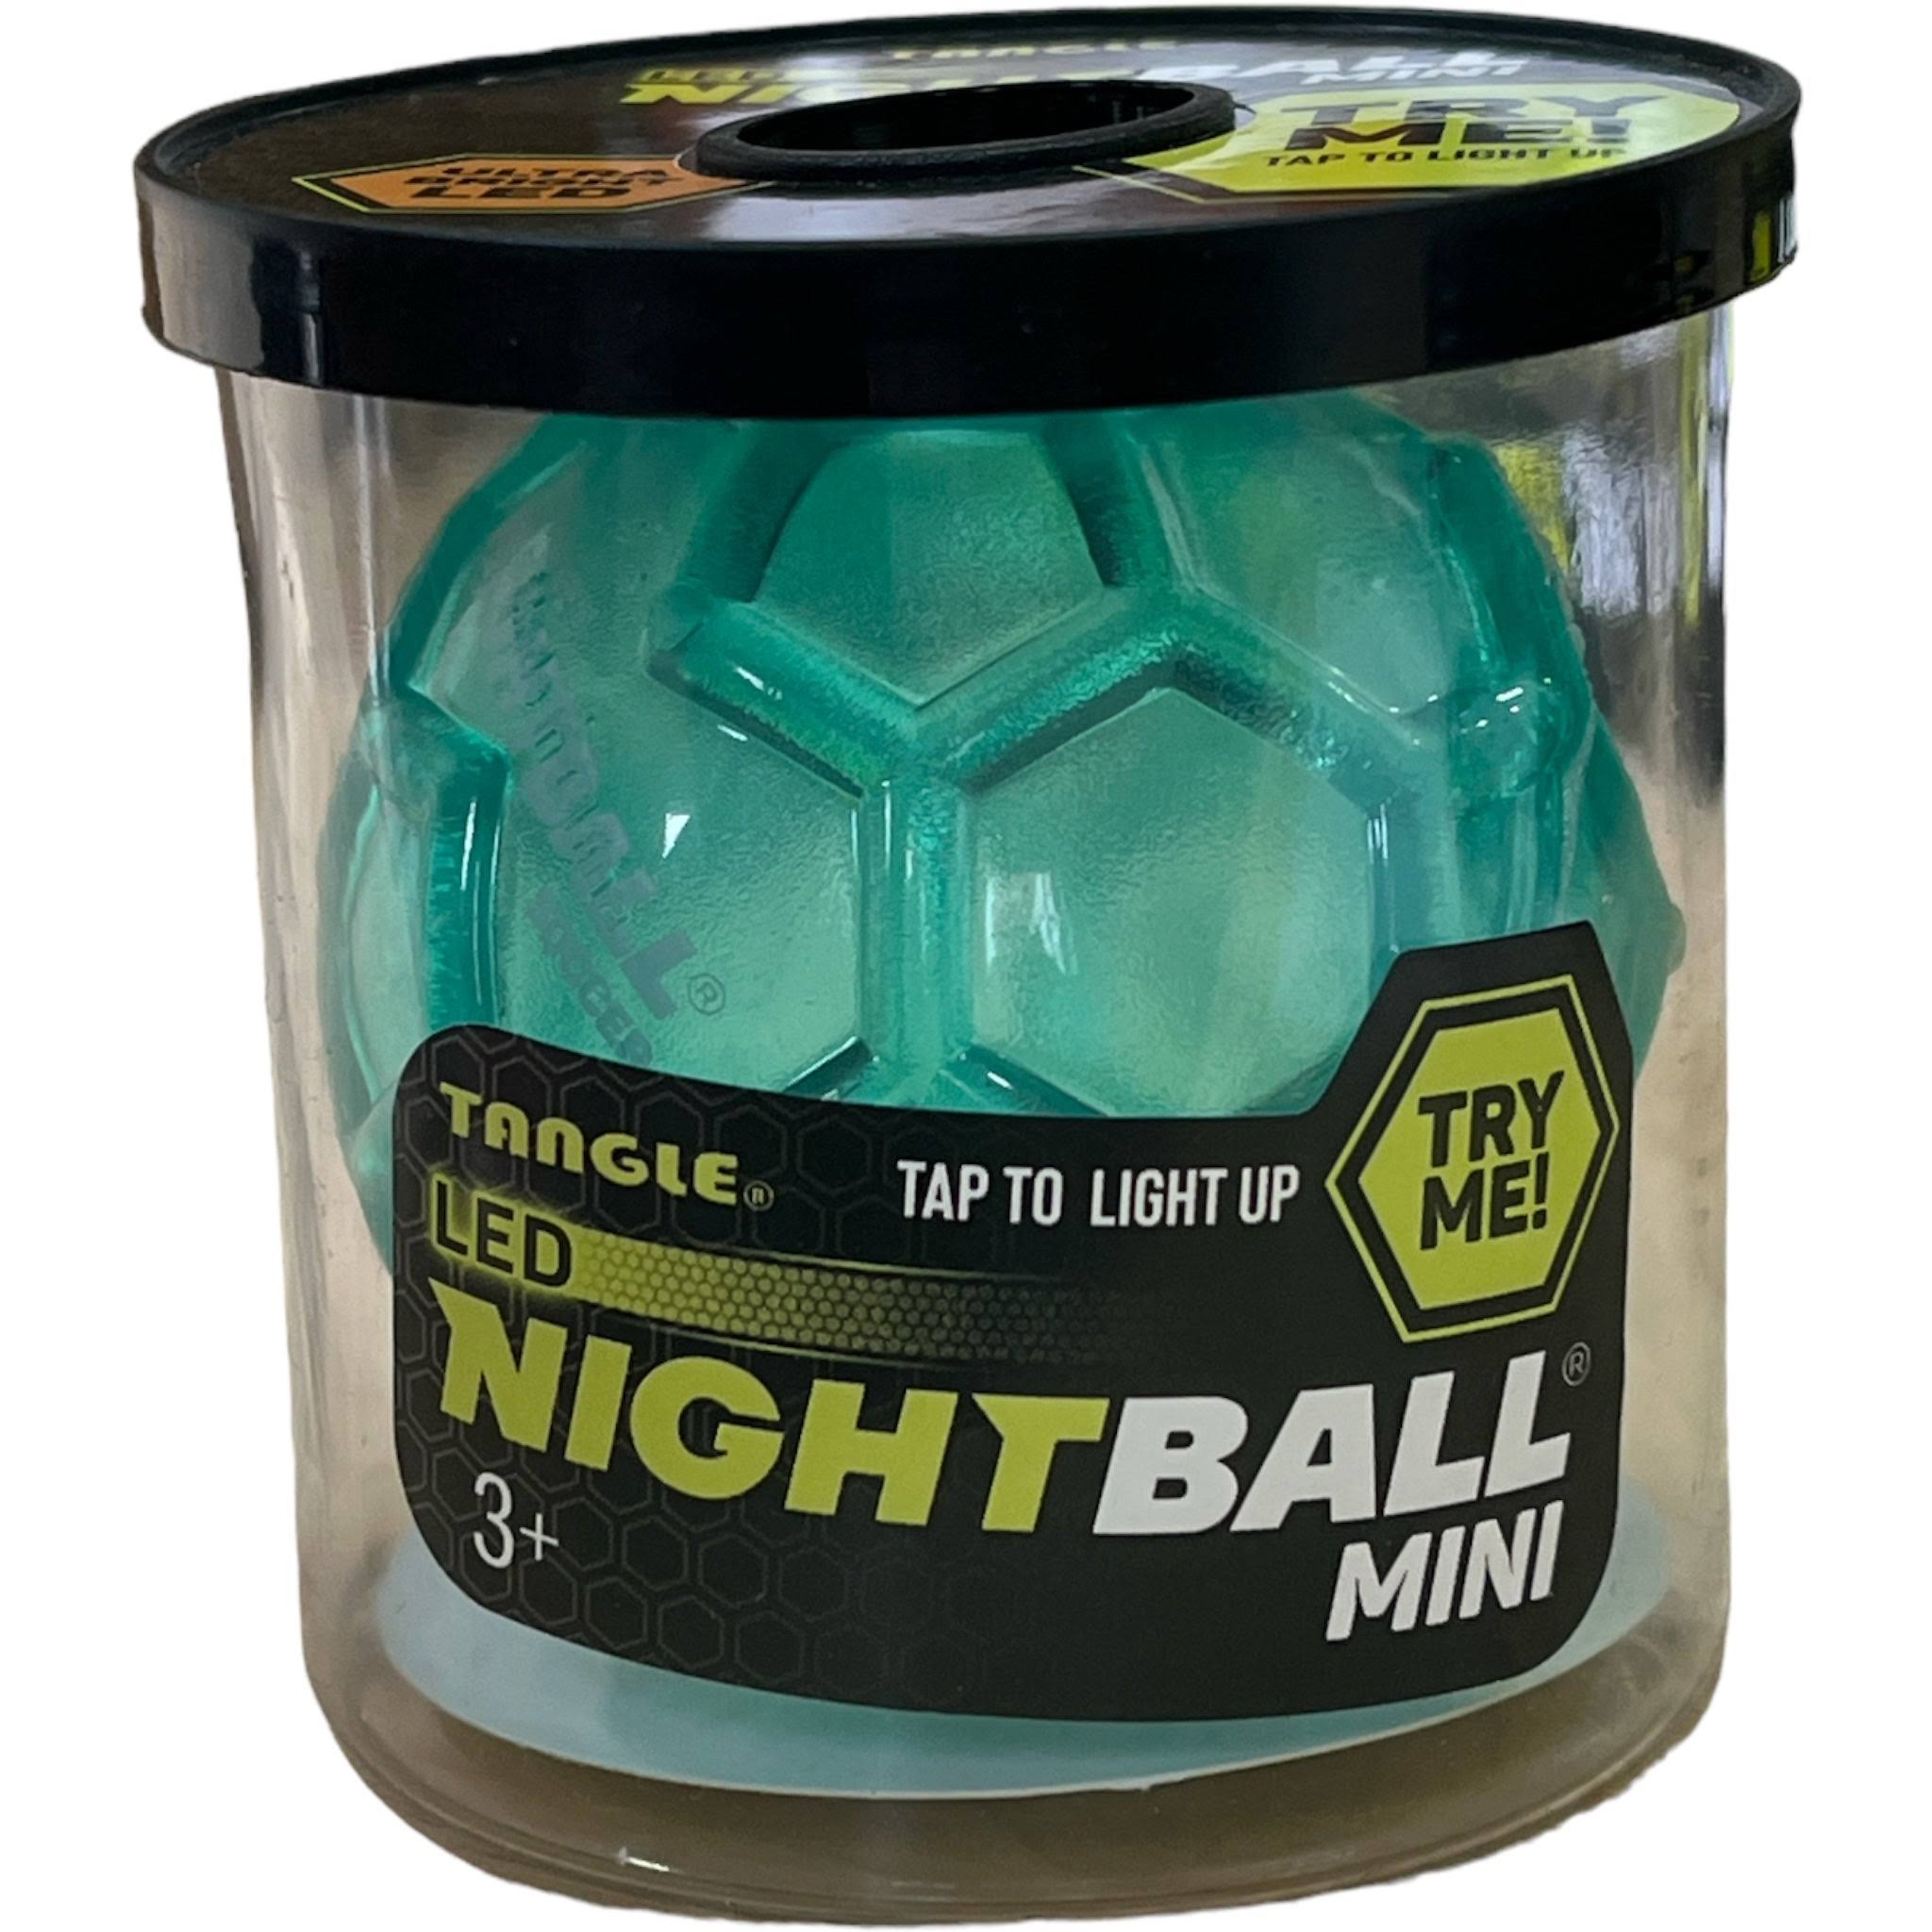 Tangle Nightball Mini